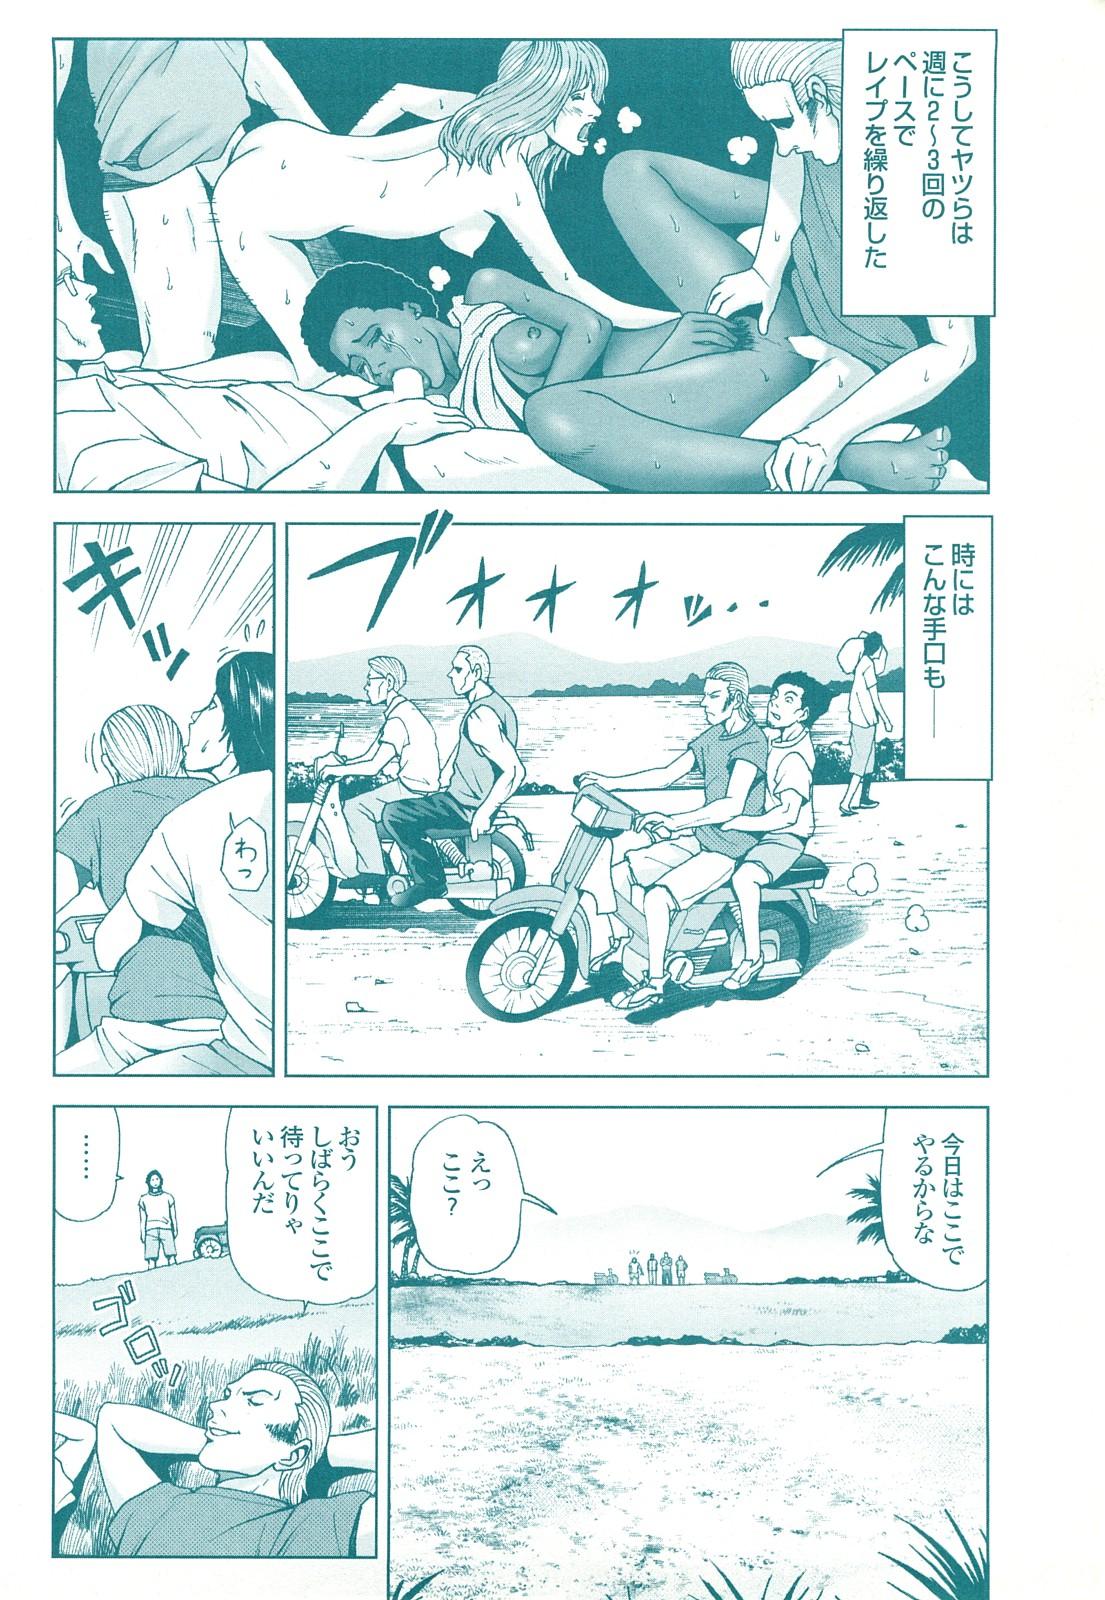 コミック裏モノJAPAN Vol.18 今井のりたつスペシャル号 133